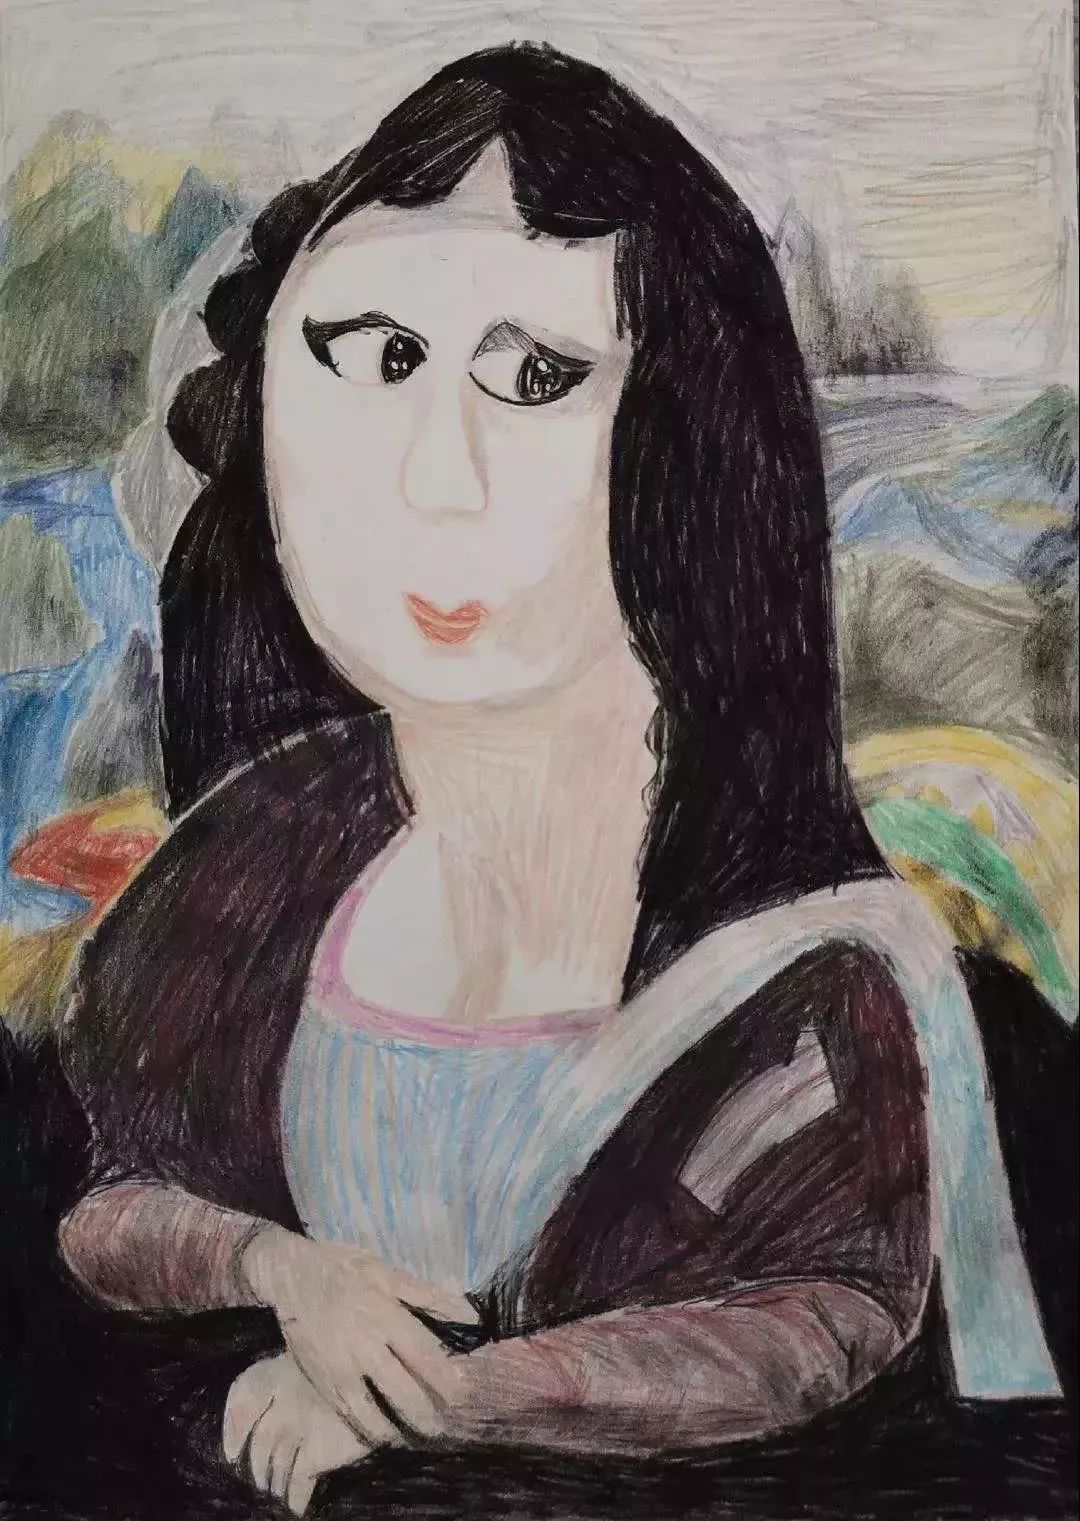 13岁自闭女孩画的"萌"娜丽莎, 瞬间征服意大利艺术世家,还将和达